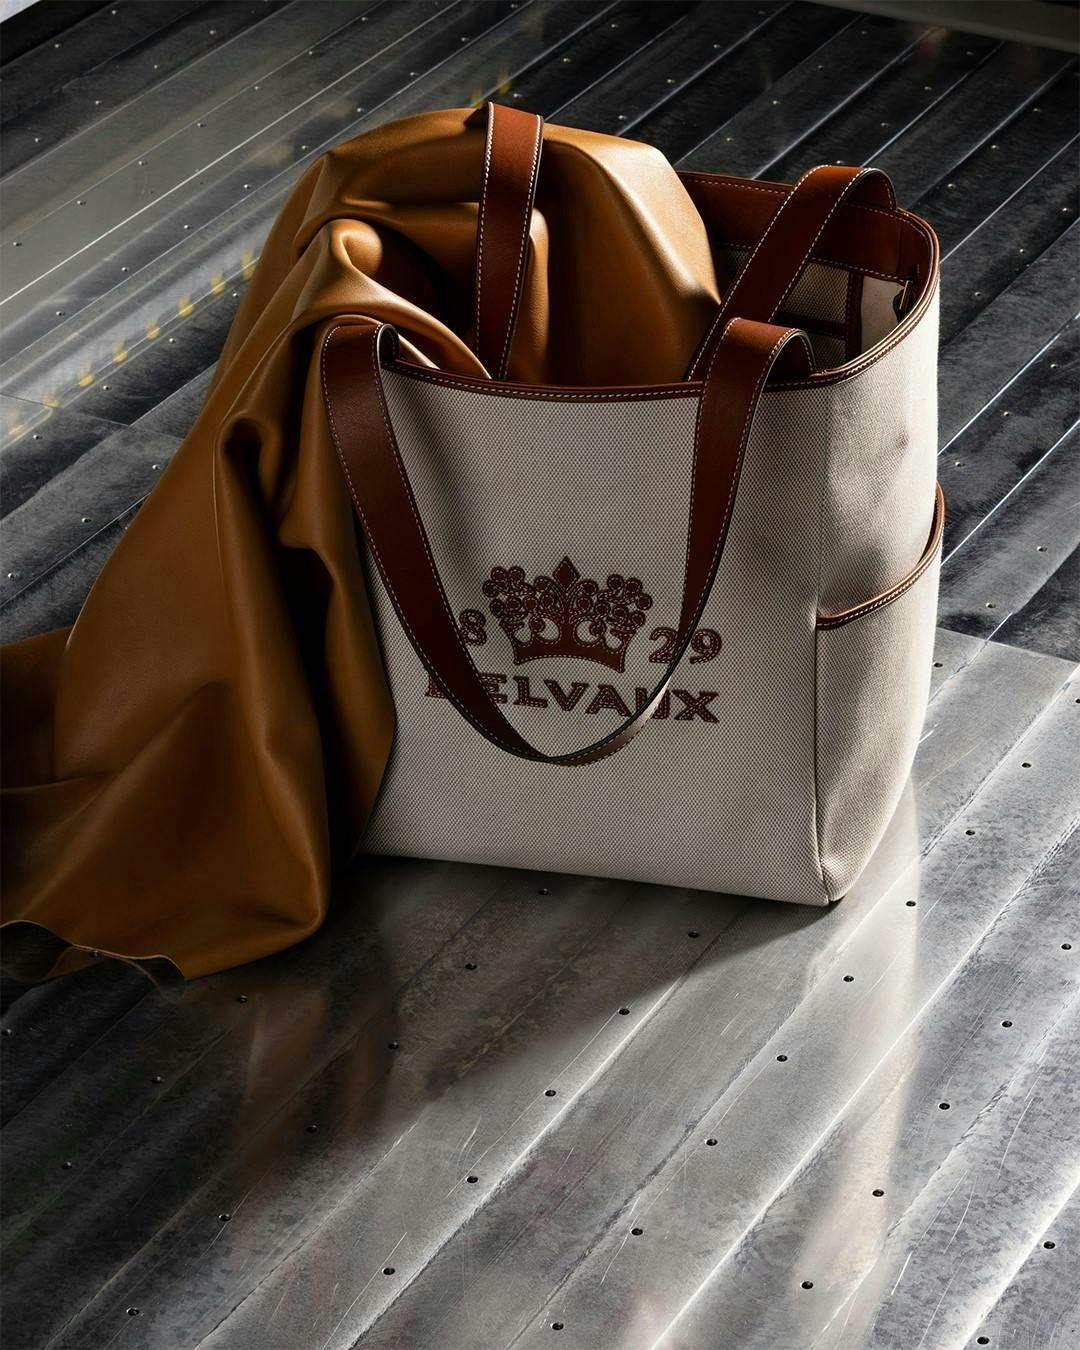 bag handbag accessories accessory tote bag